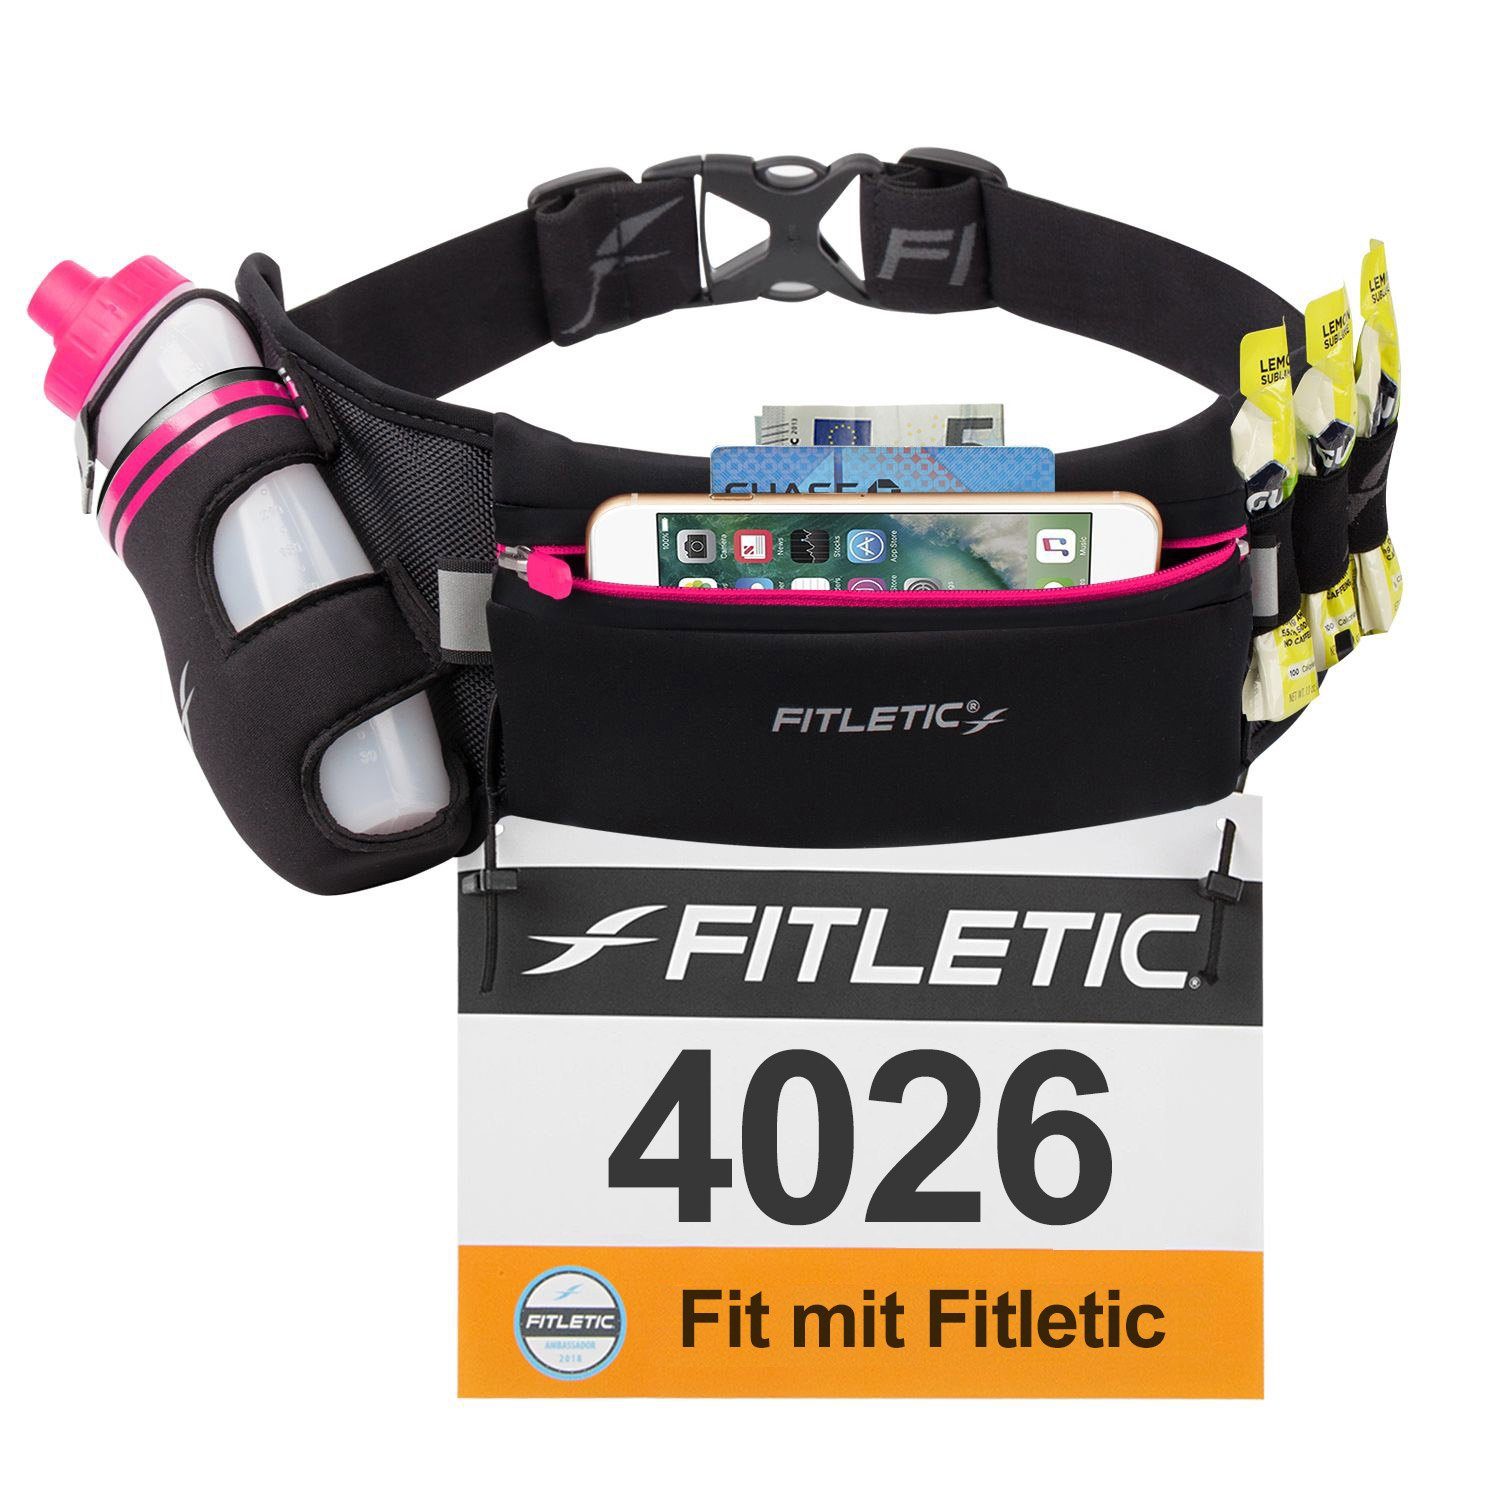 FULLY Trinkgürtel, Hüfttasche Schwarz Marathon, - für Laufausrüstung mit Trinkflasche Laufgürtel LOADED Belt Trinkflaschengürtel, Jogging, Laufen, Fitletic /Pink Walking, Premium Lauftasche, Running